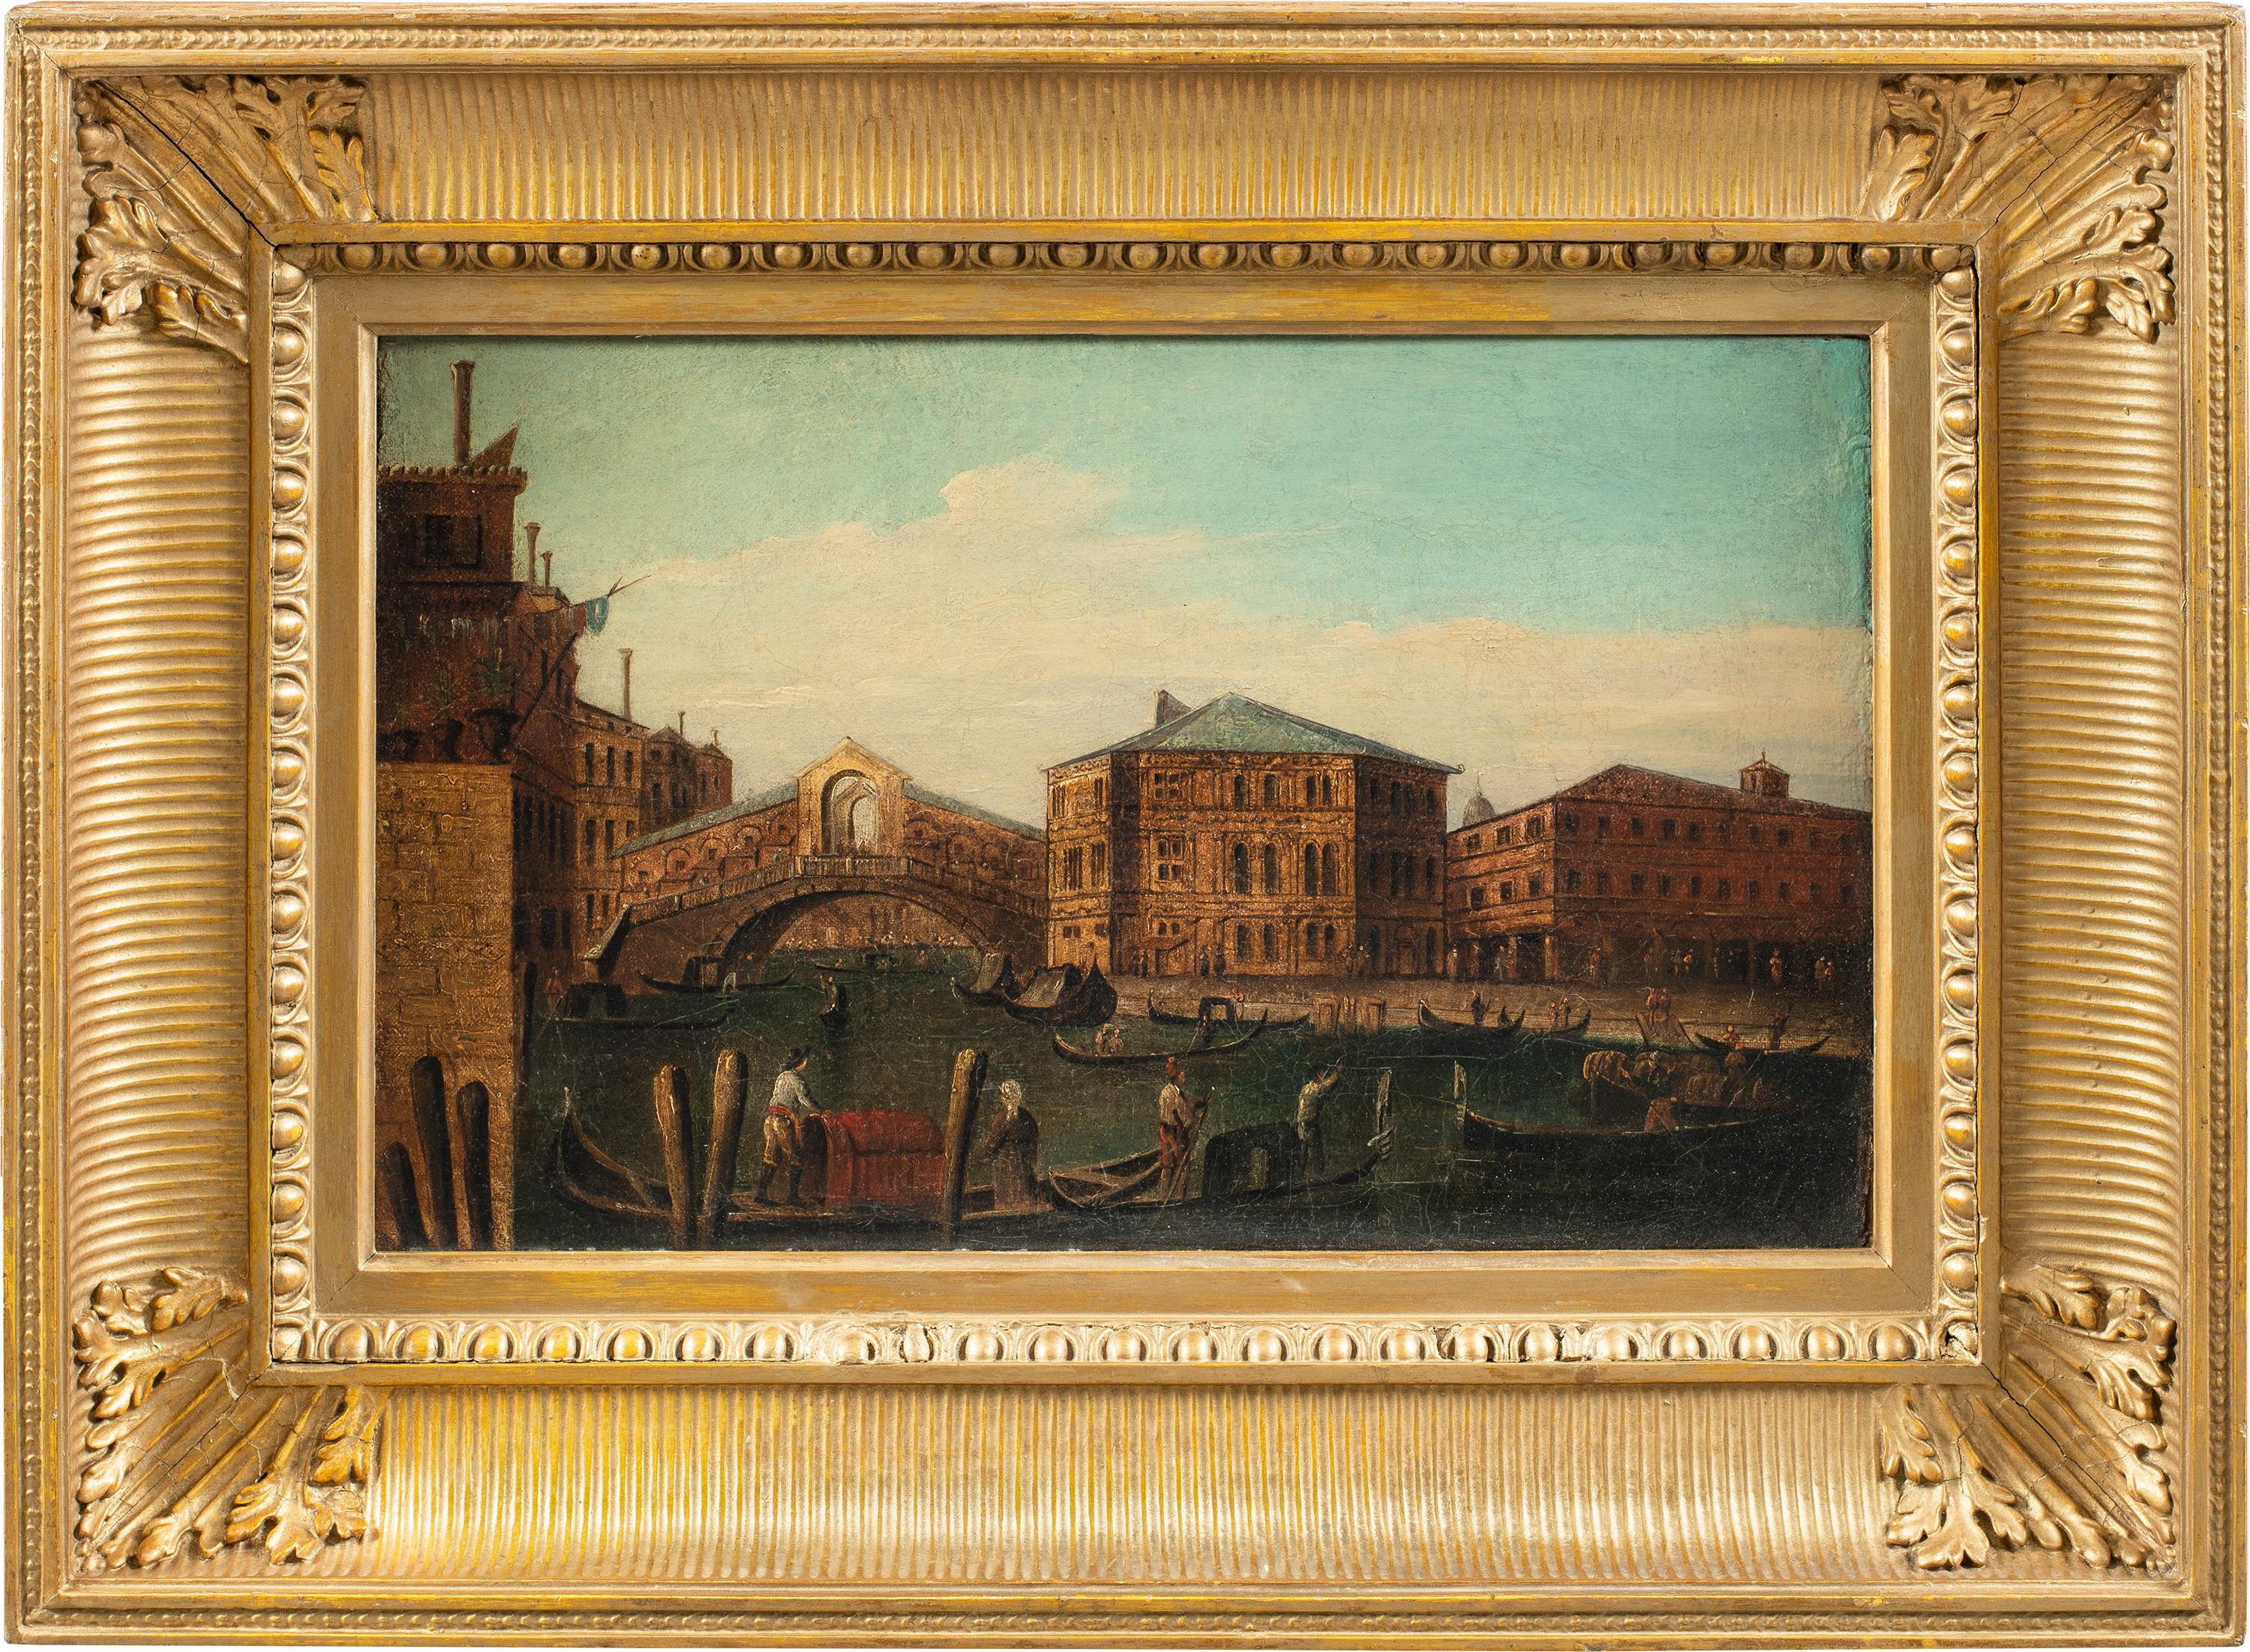 Vedutist Venetian painter - 19th century landscape painting - Venice view Rialto